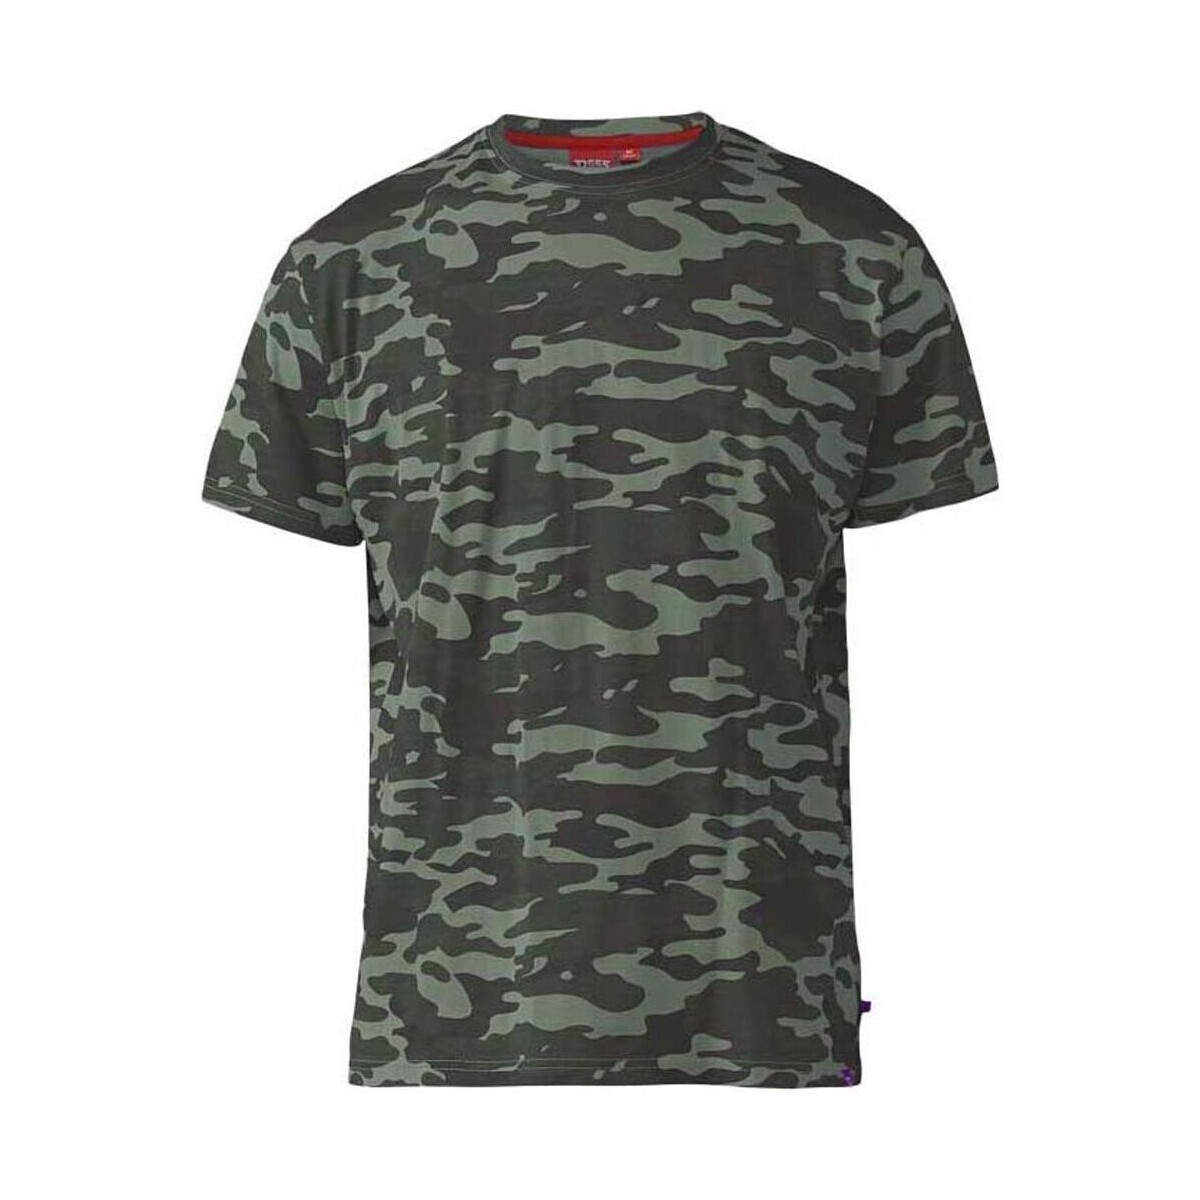 Vêtements Homme T-shirts manches courtes Duke Gaston D555 Multicolore